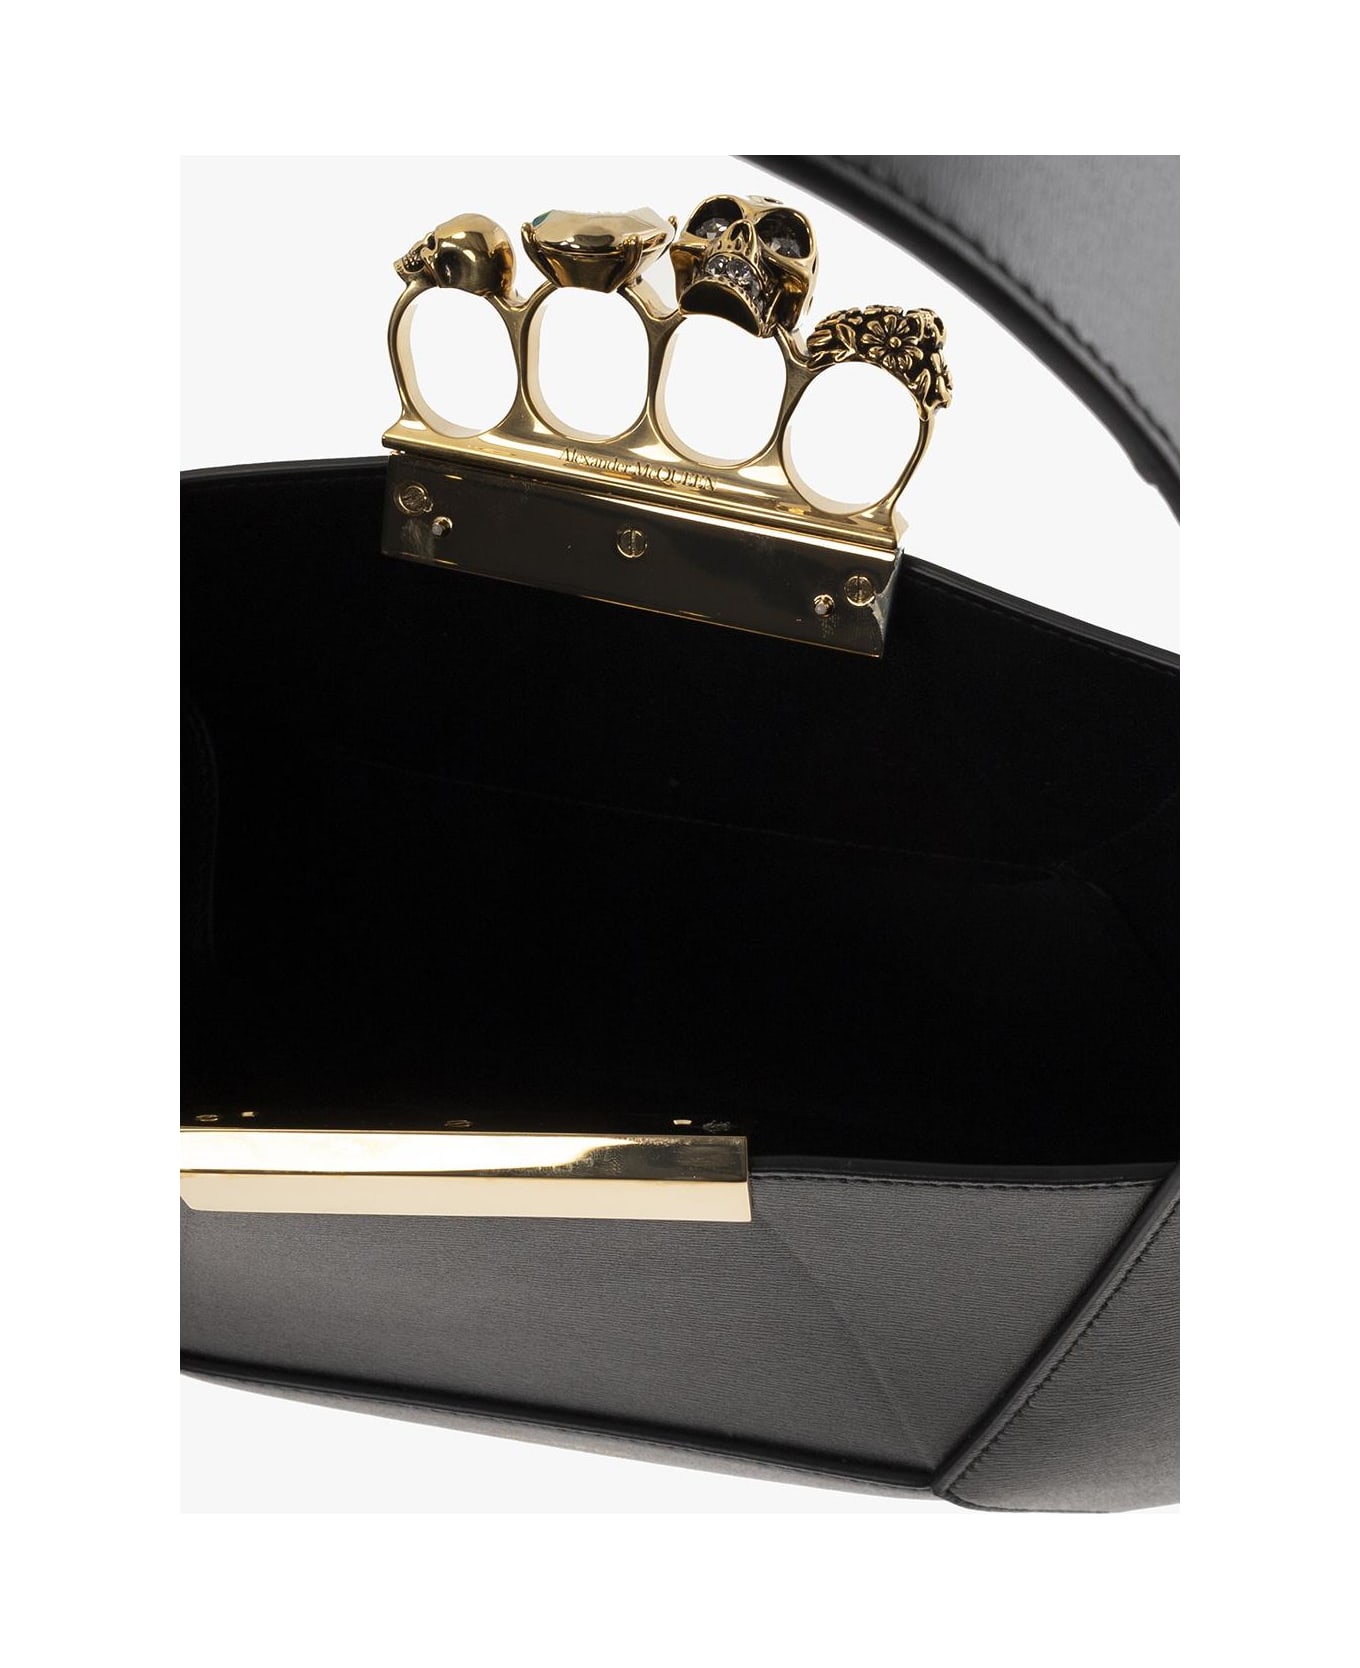 Alexander McQueen 'jewelled Hobo' Handbag - Nero